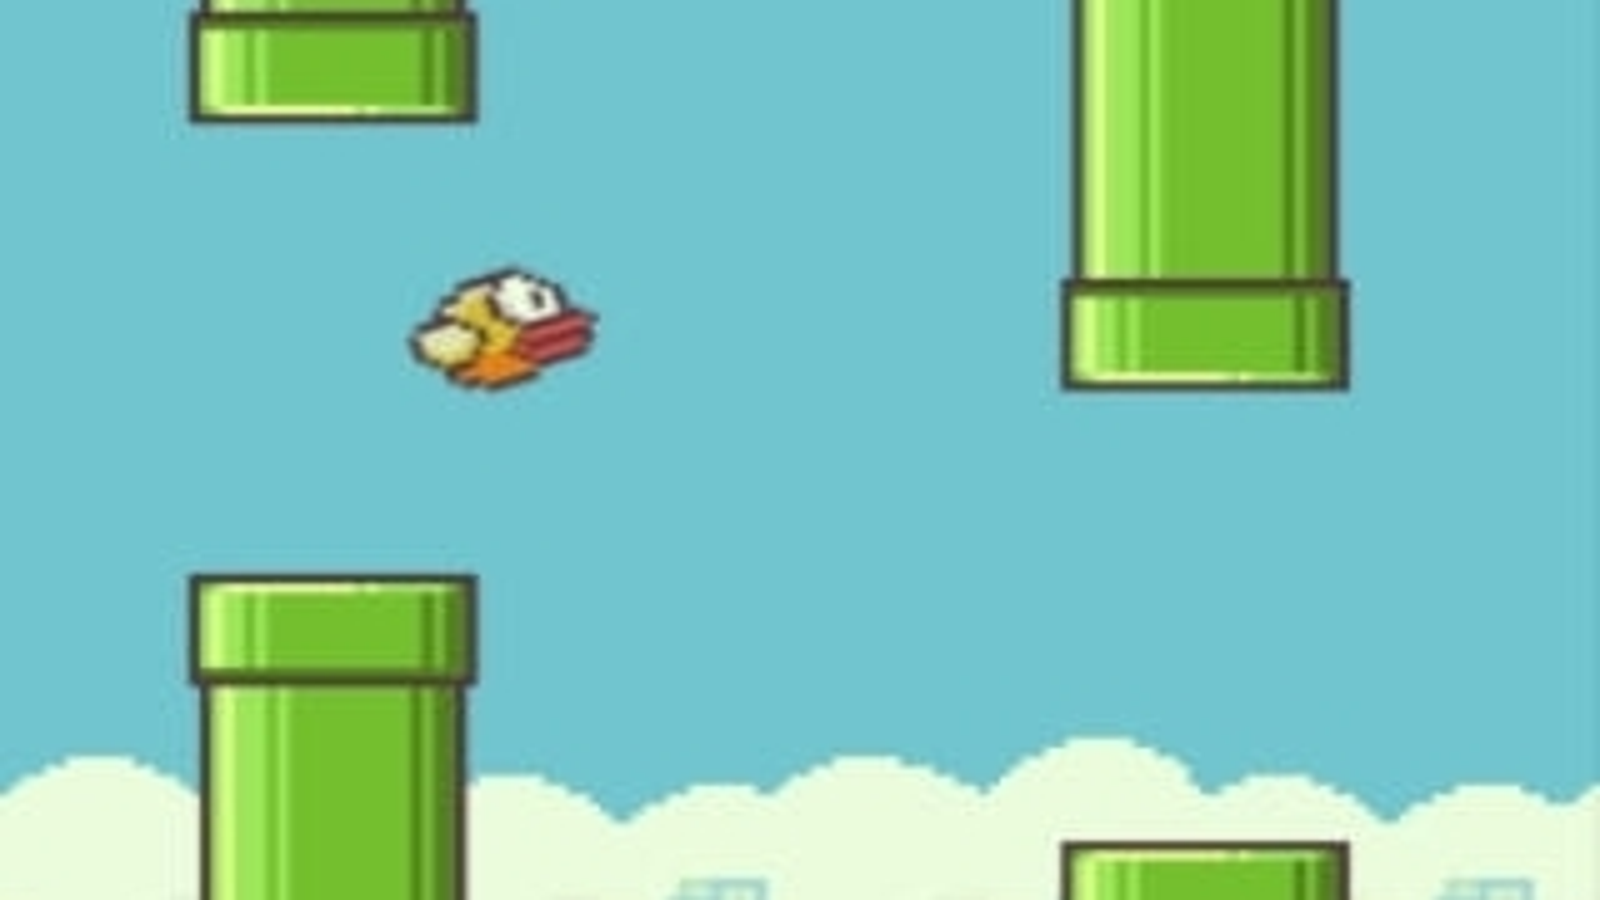 As 4 coisas que o Flappy Bird tem que te viciam sem que você